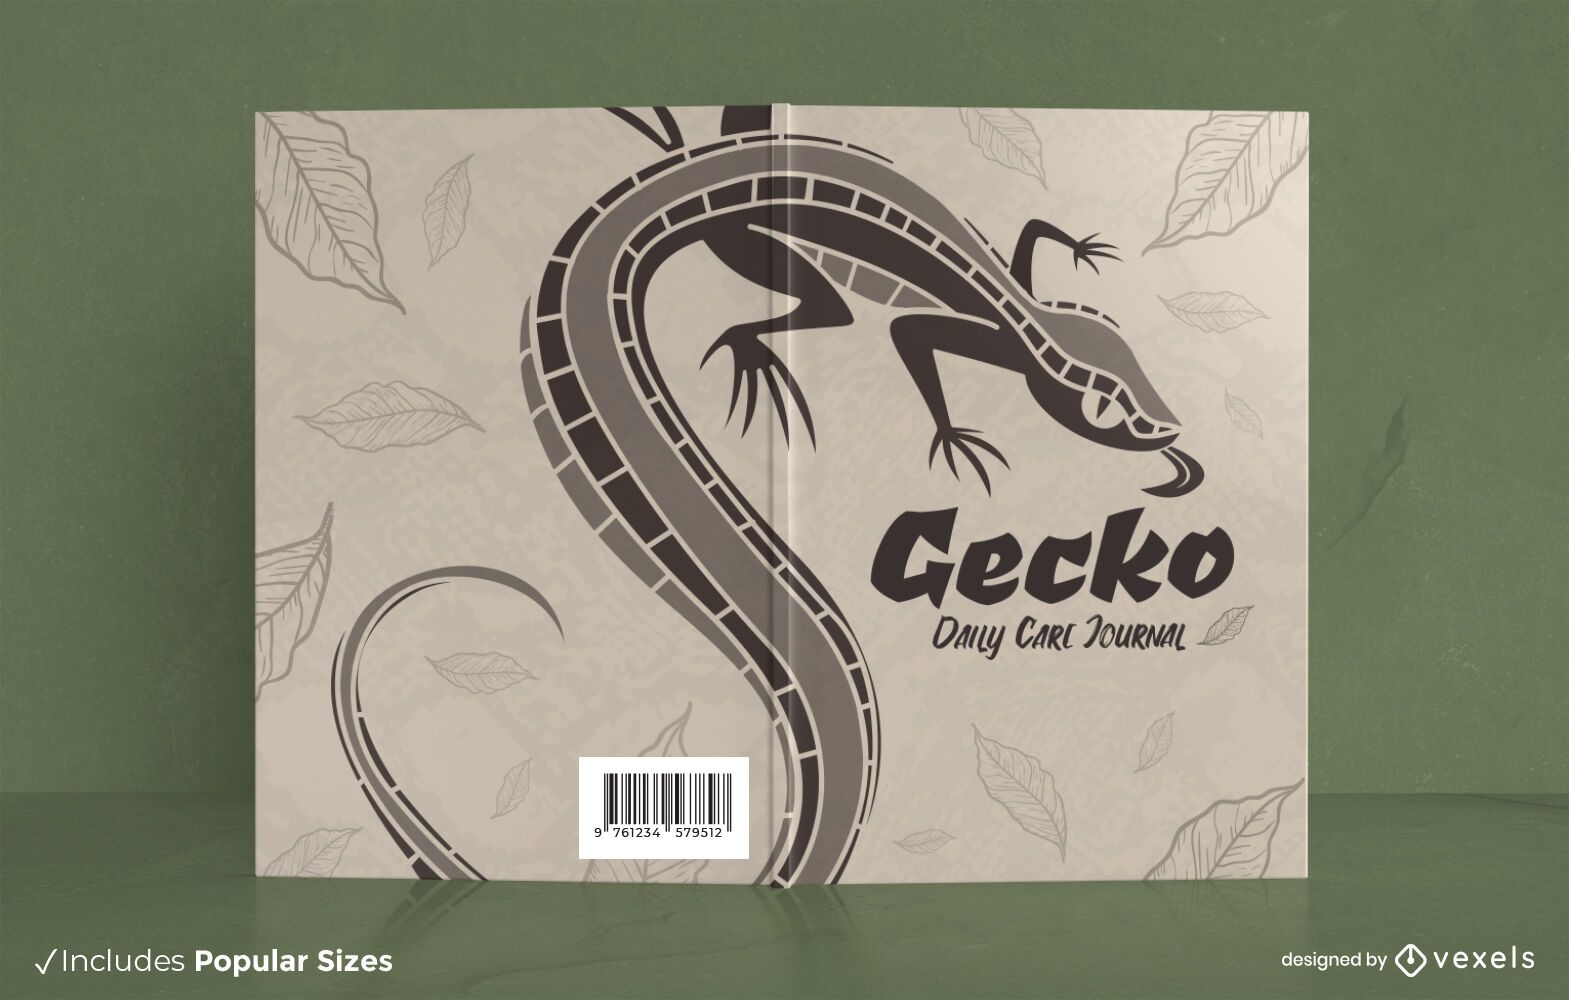 Gecko care book cover design